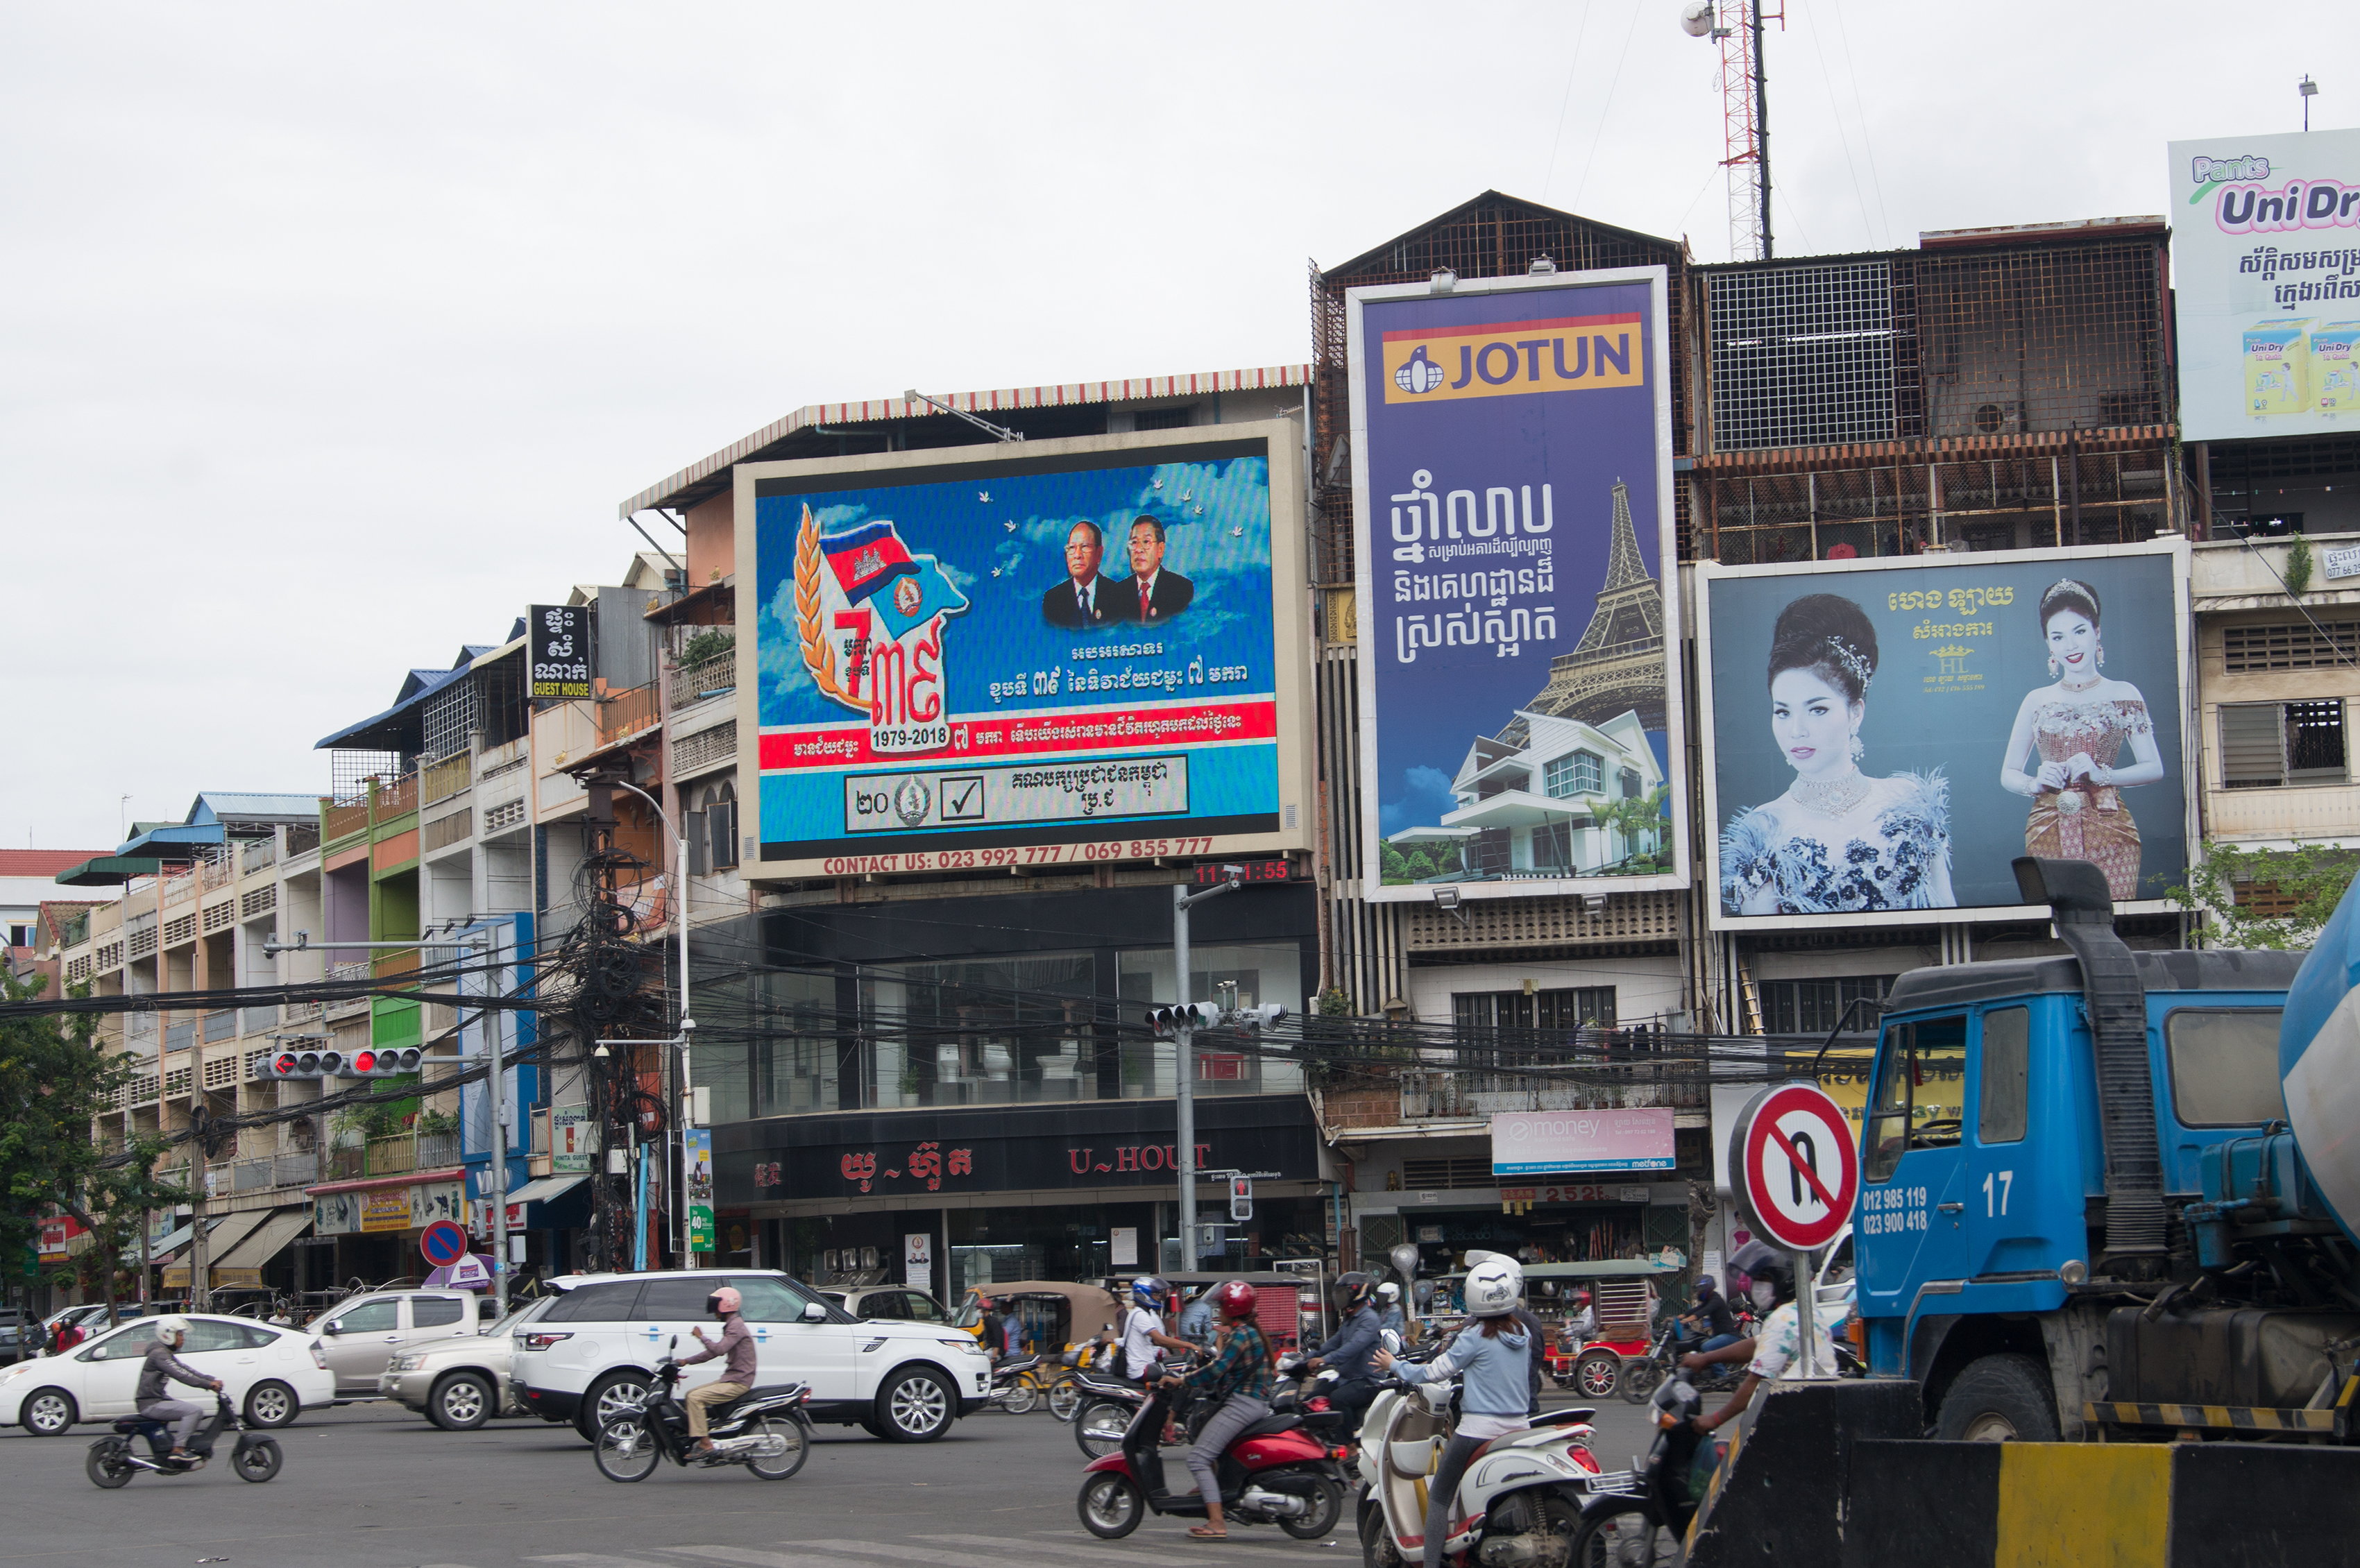 Welche Zukunft für Kambodscha nach den Wahlen?